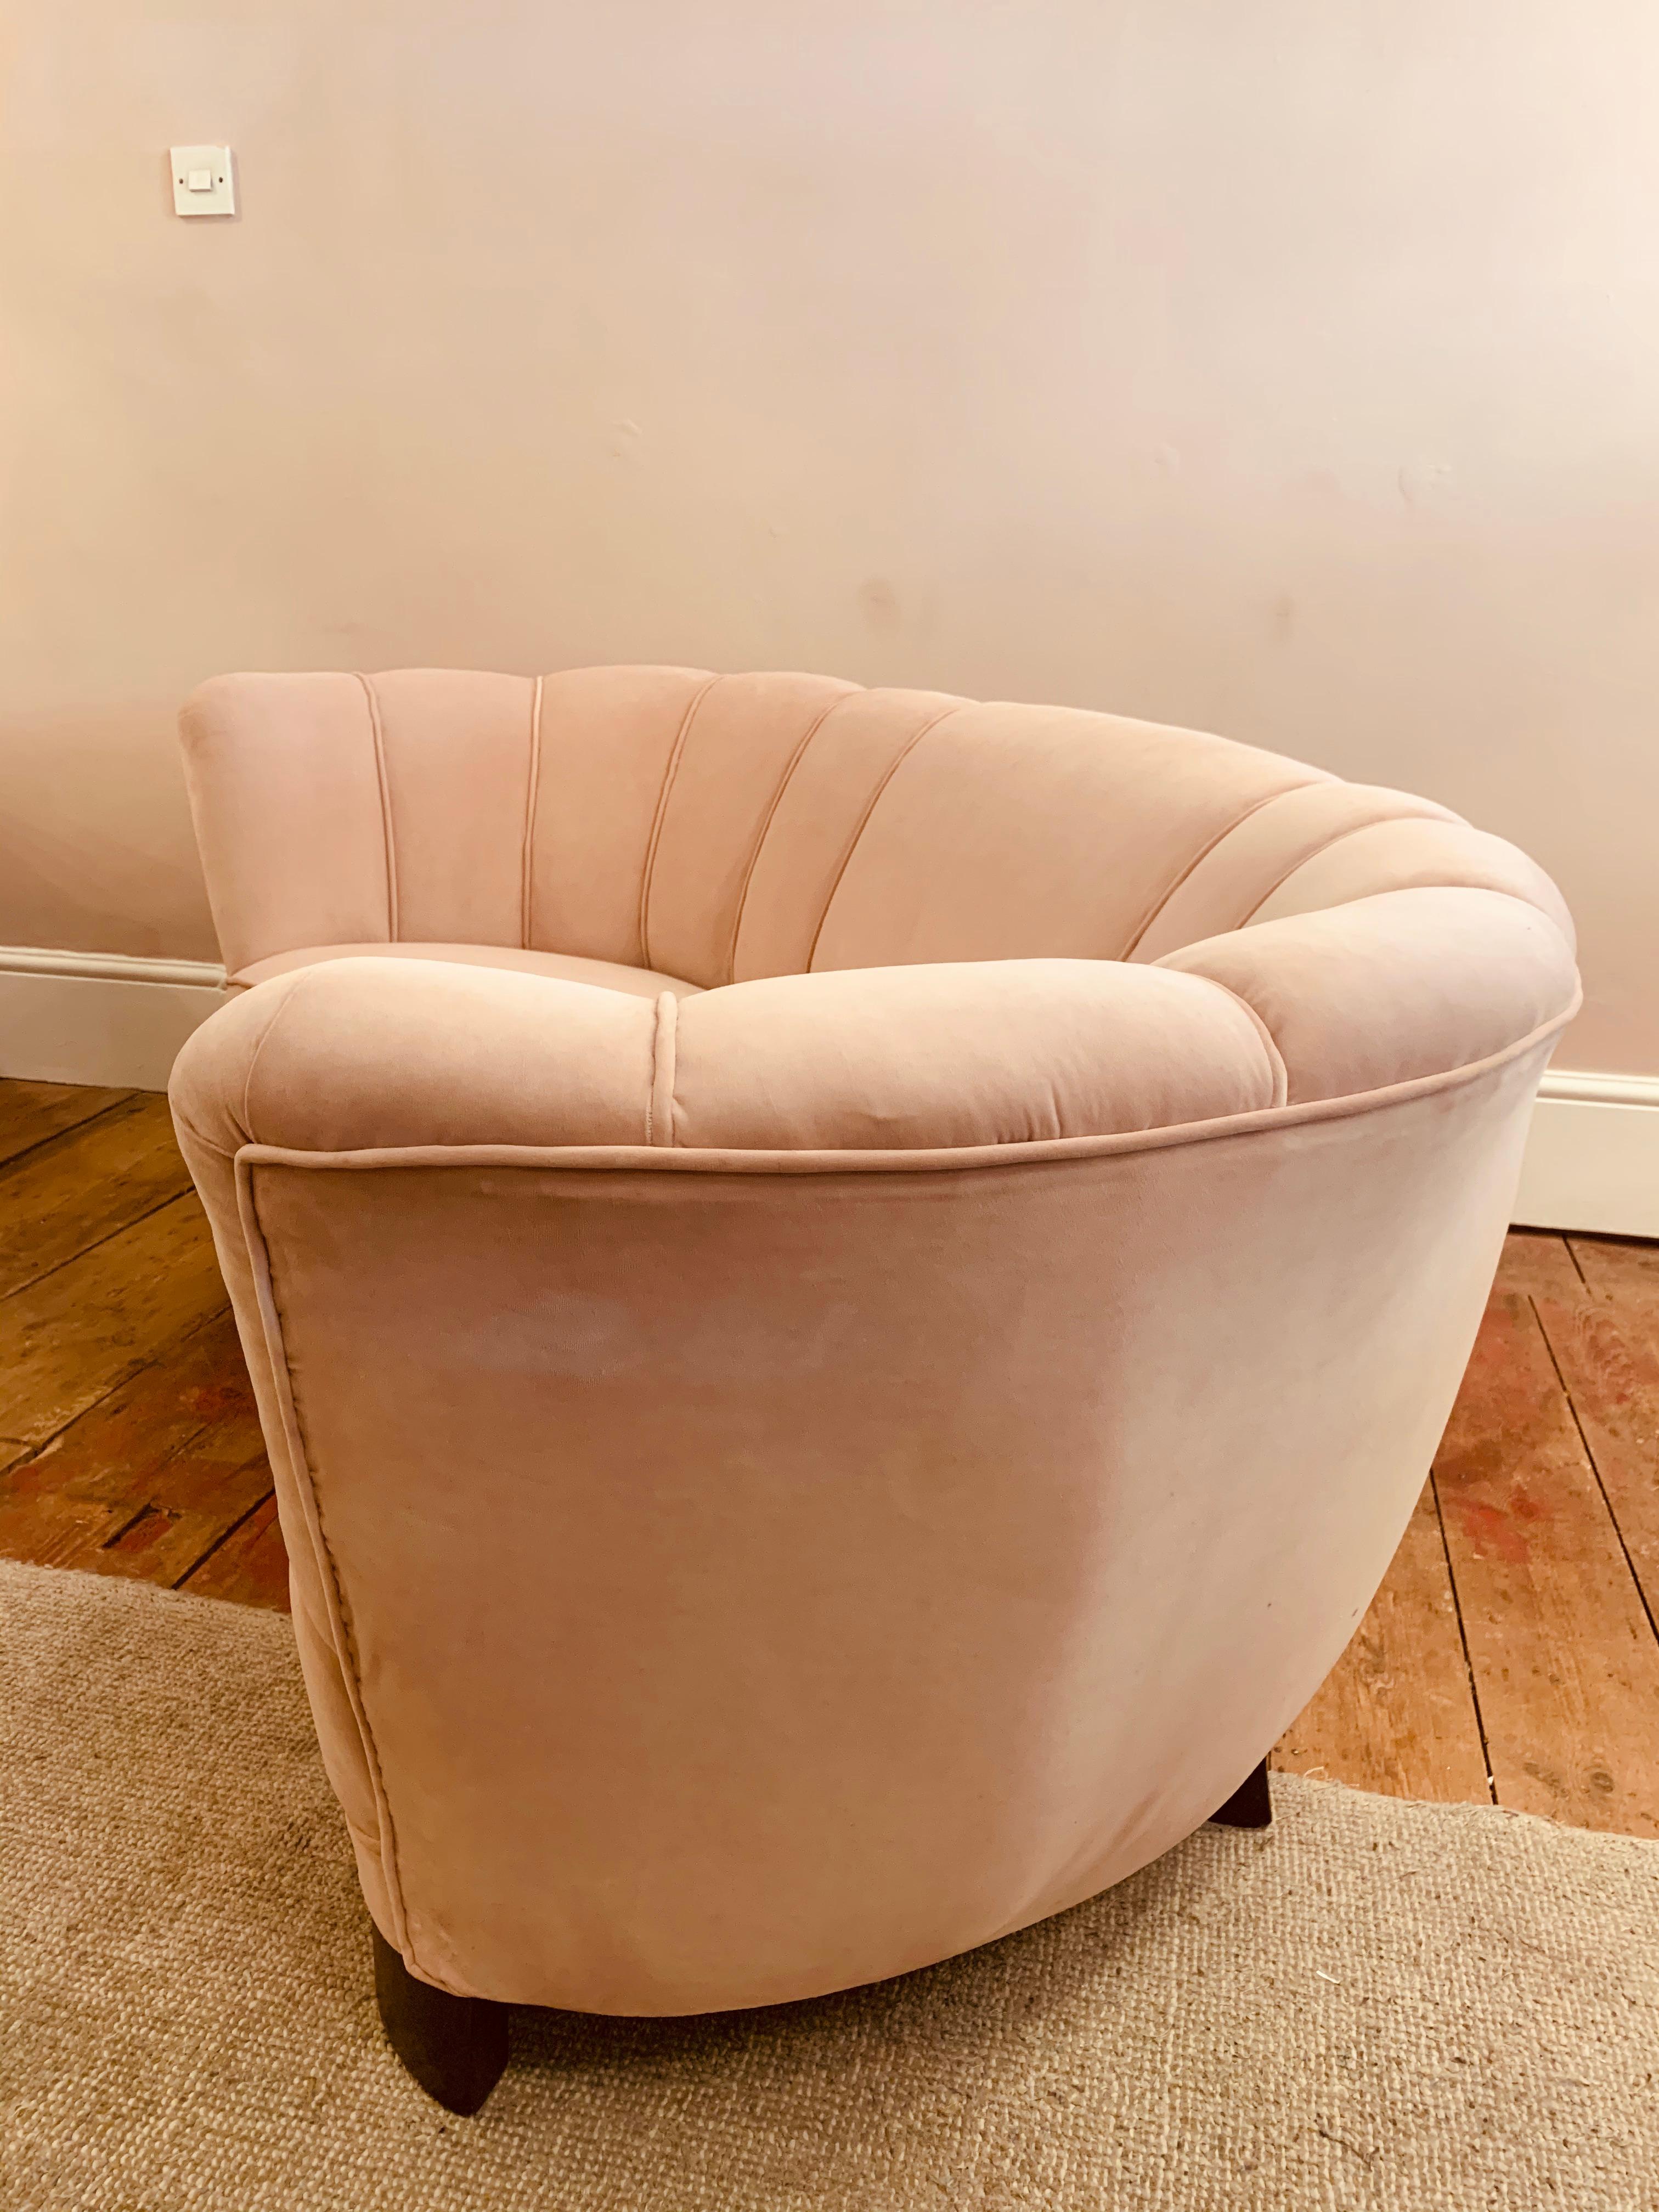 1940s Danish Banana Shaped Scalloped Sofa in Blush Pink 4